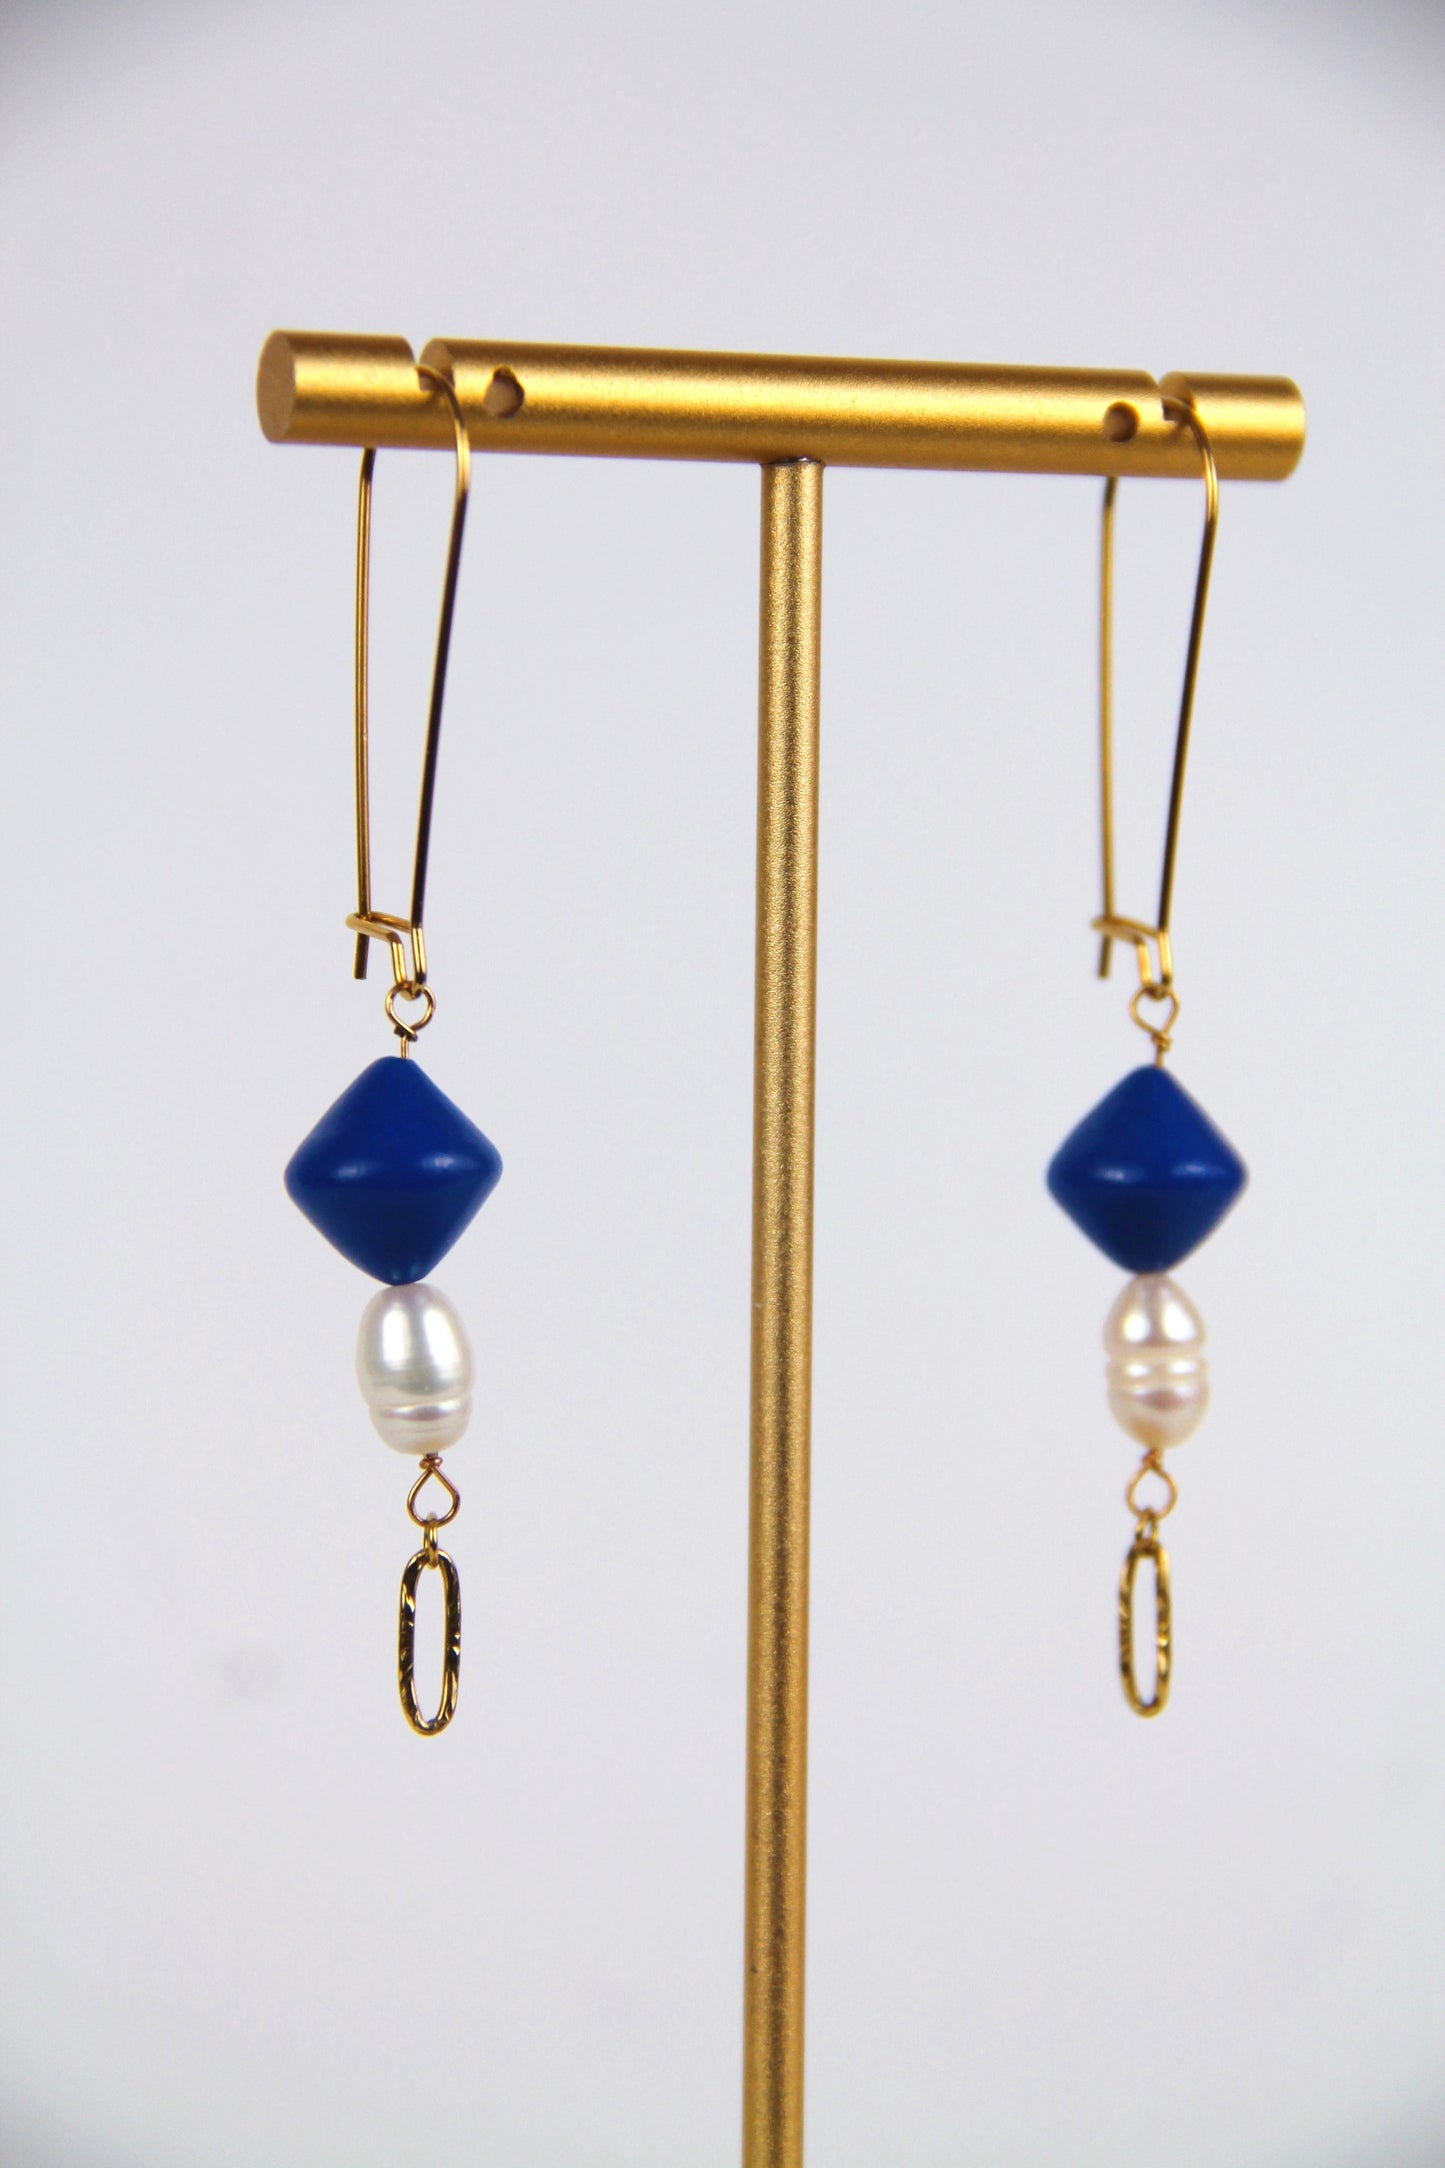 Freshwater pearl ODETTE earrings - Blue